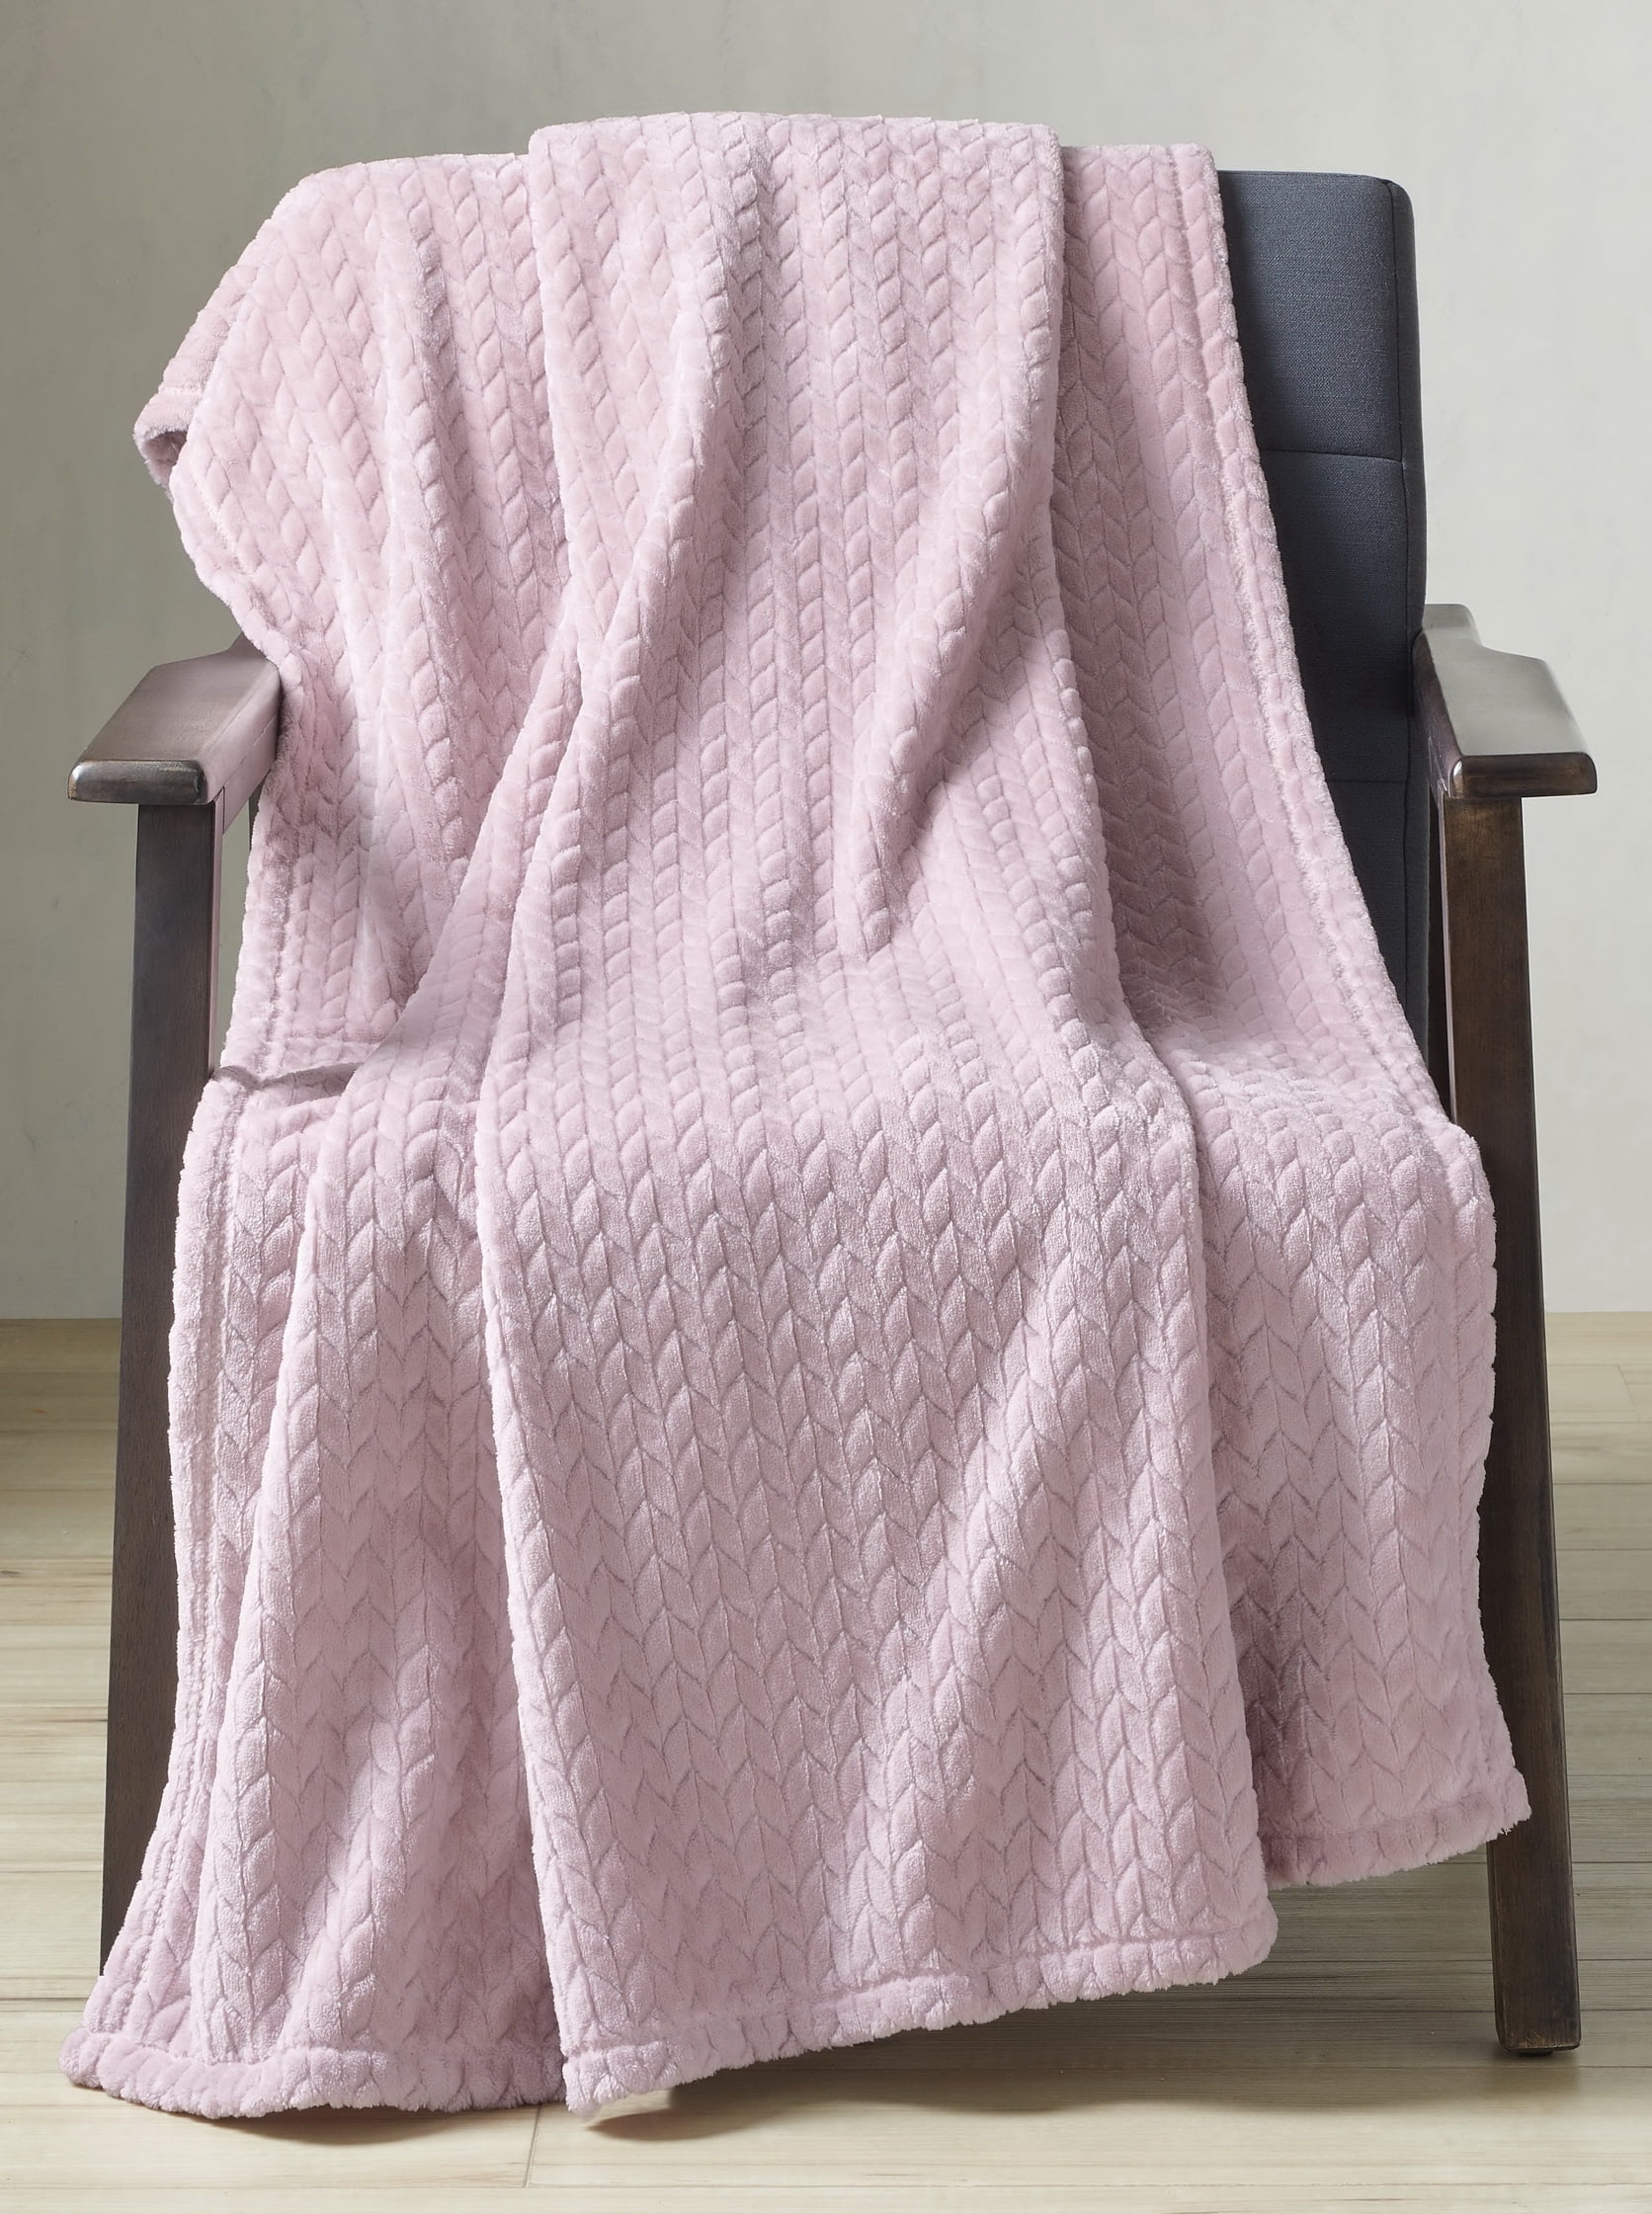 50" X 72" Better Homes & Gardens Velvet Plush Throw Blanket (Pink) $7.22 + Free S&H w/ Walmart+ or $35+